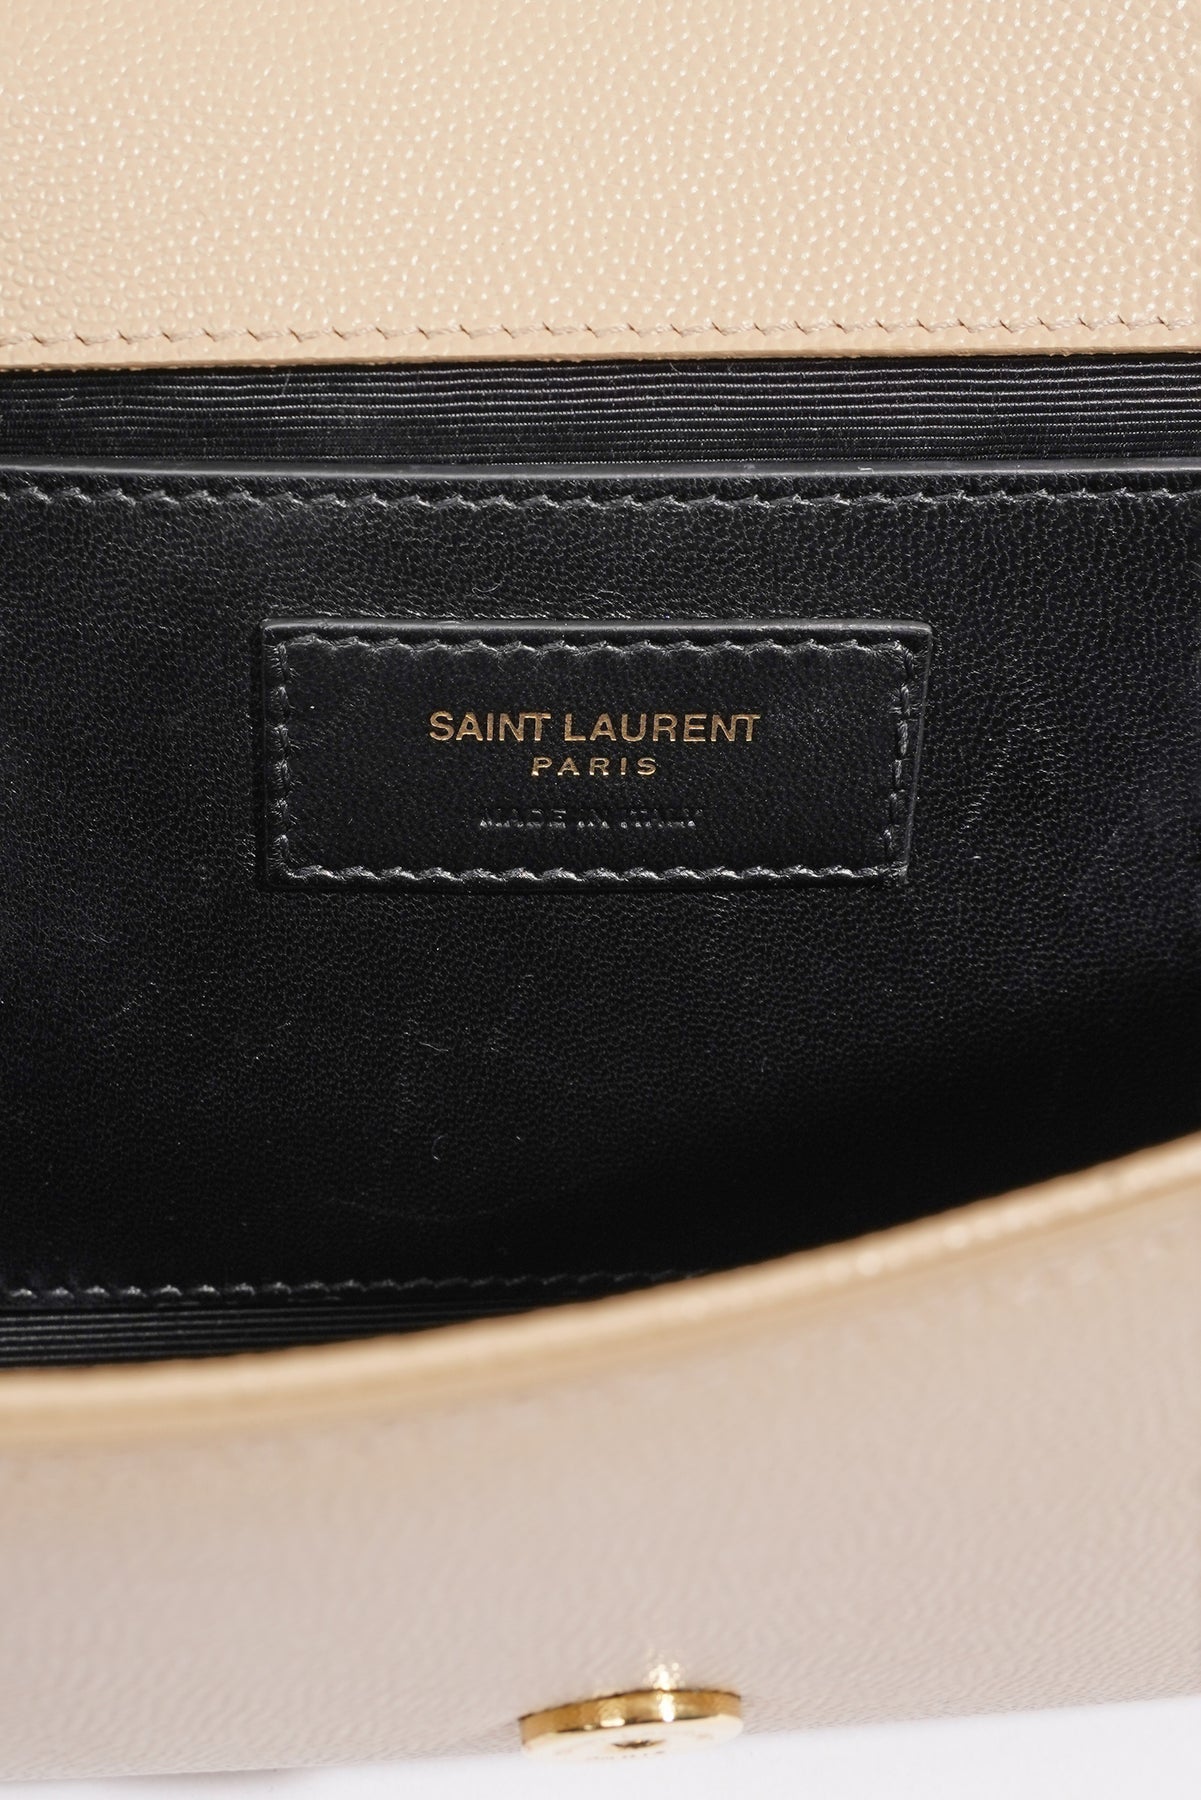 Saint Laurent Nude Leather Monogram Kate Clutch Saint Laurent Paris